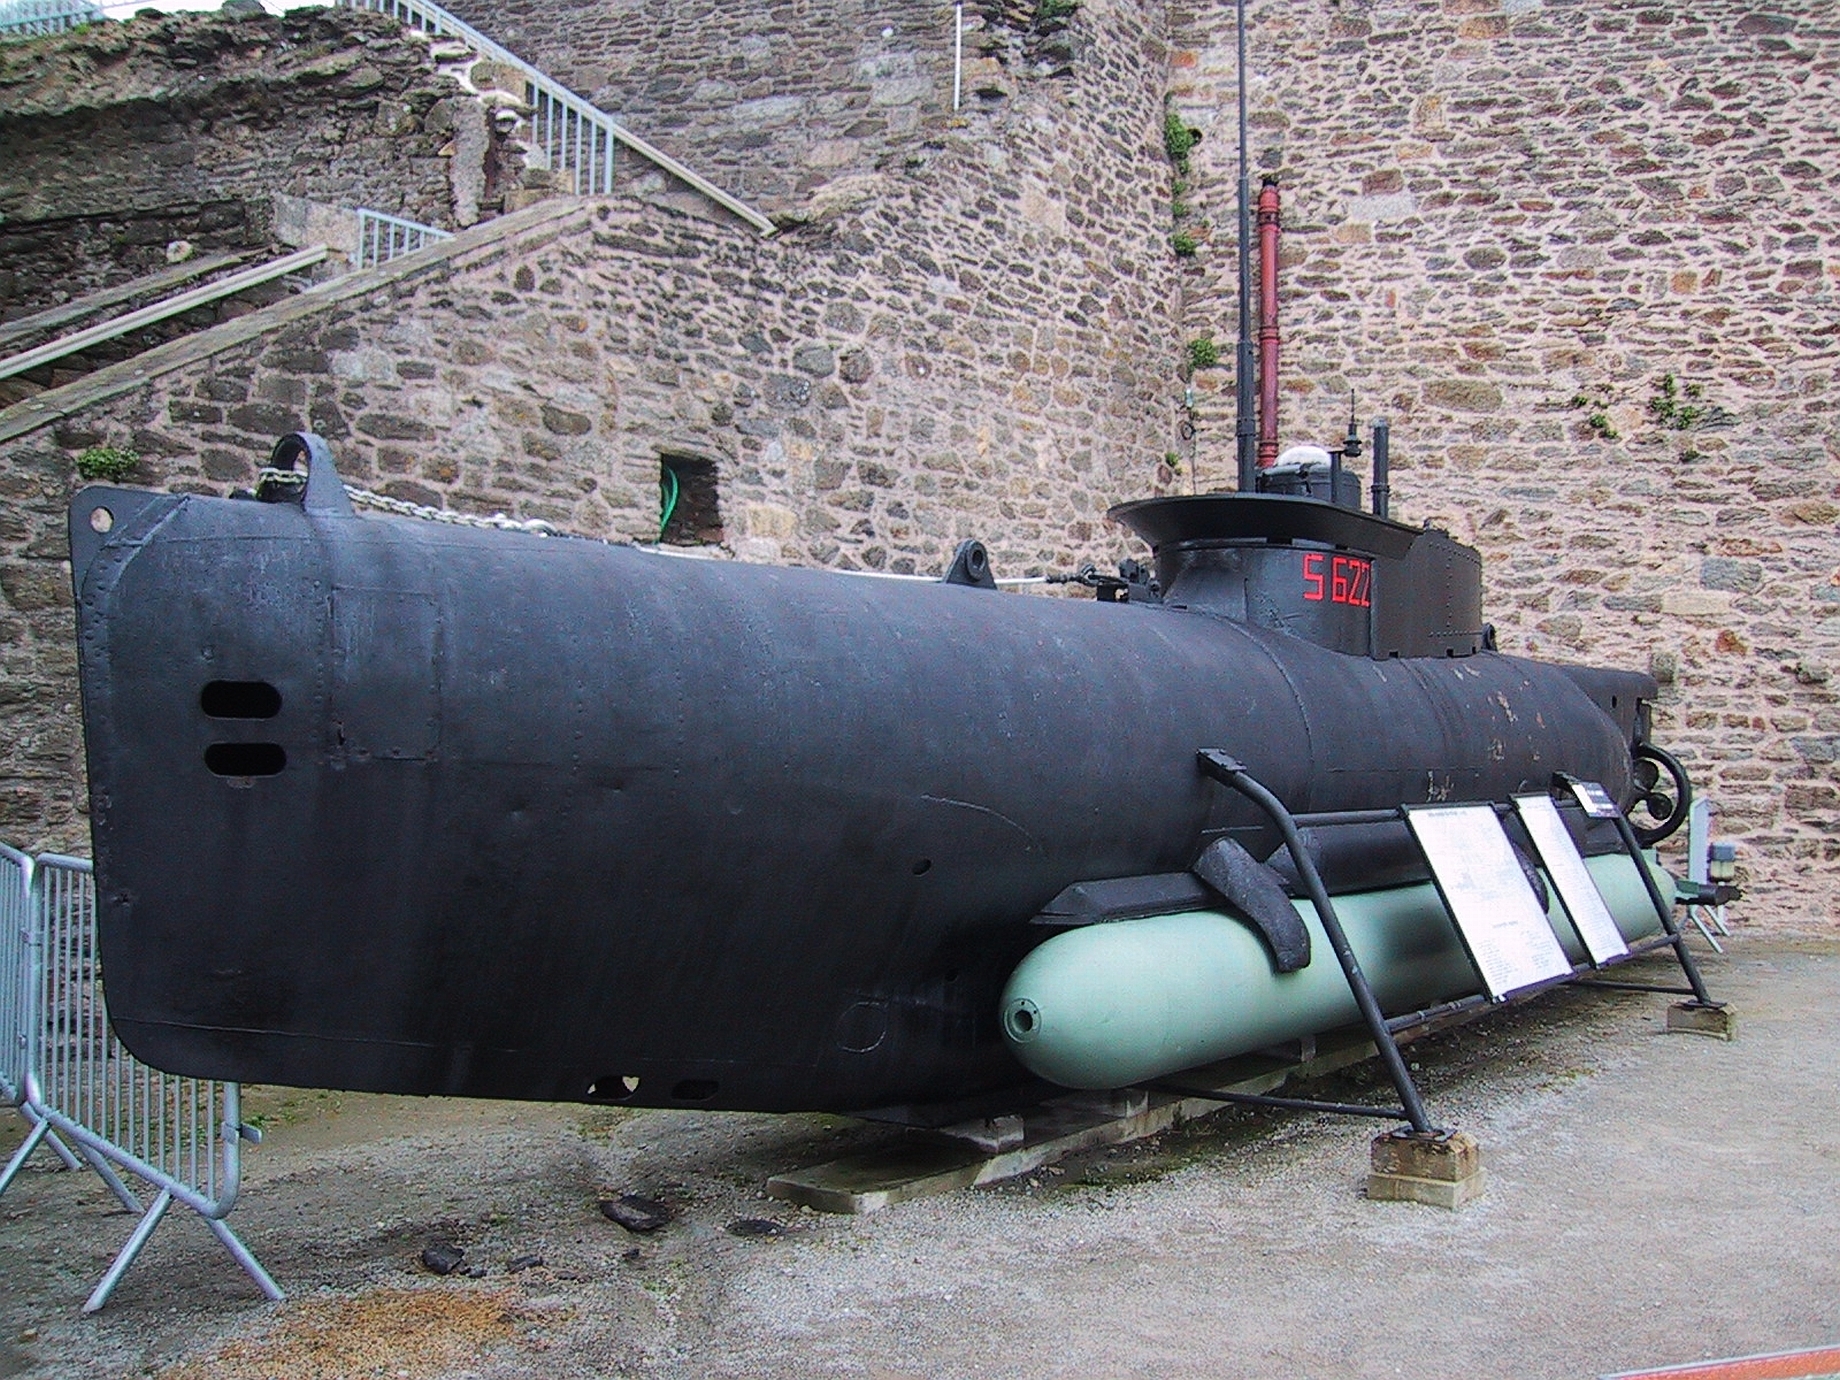 Малые пл. Seehund подводная лодка. Сверхмалая подводная лодка Зеехунд. Зеехунд подводная лодка. Подводные лодки типа «Зеехунд».